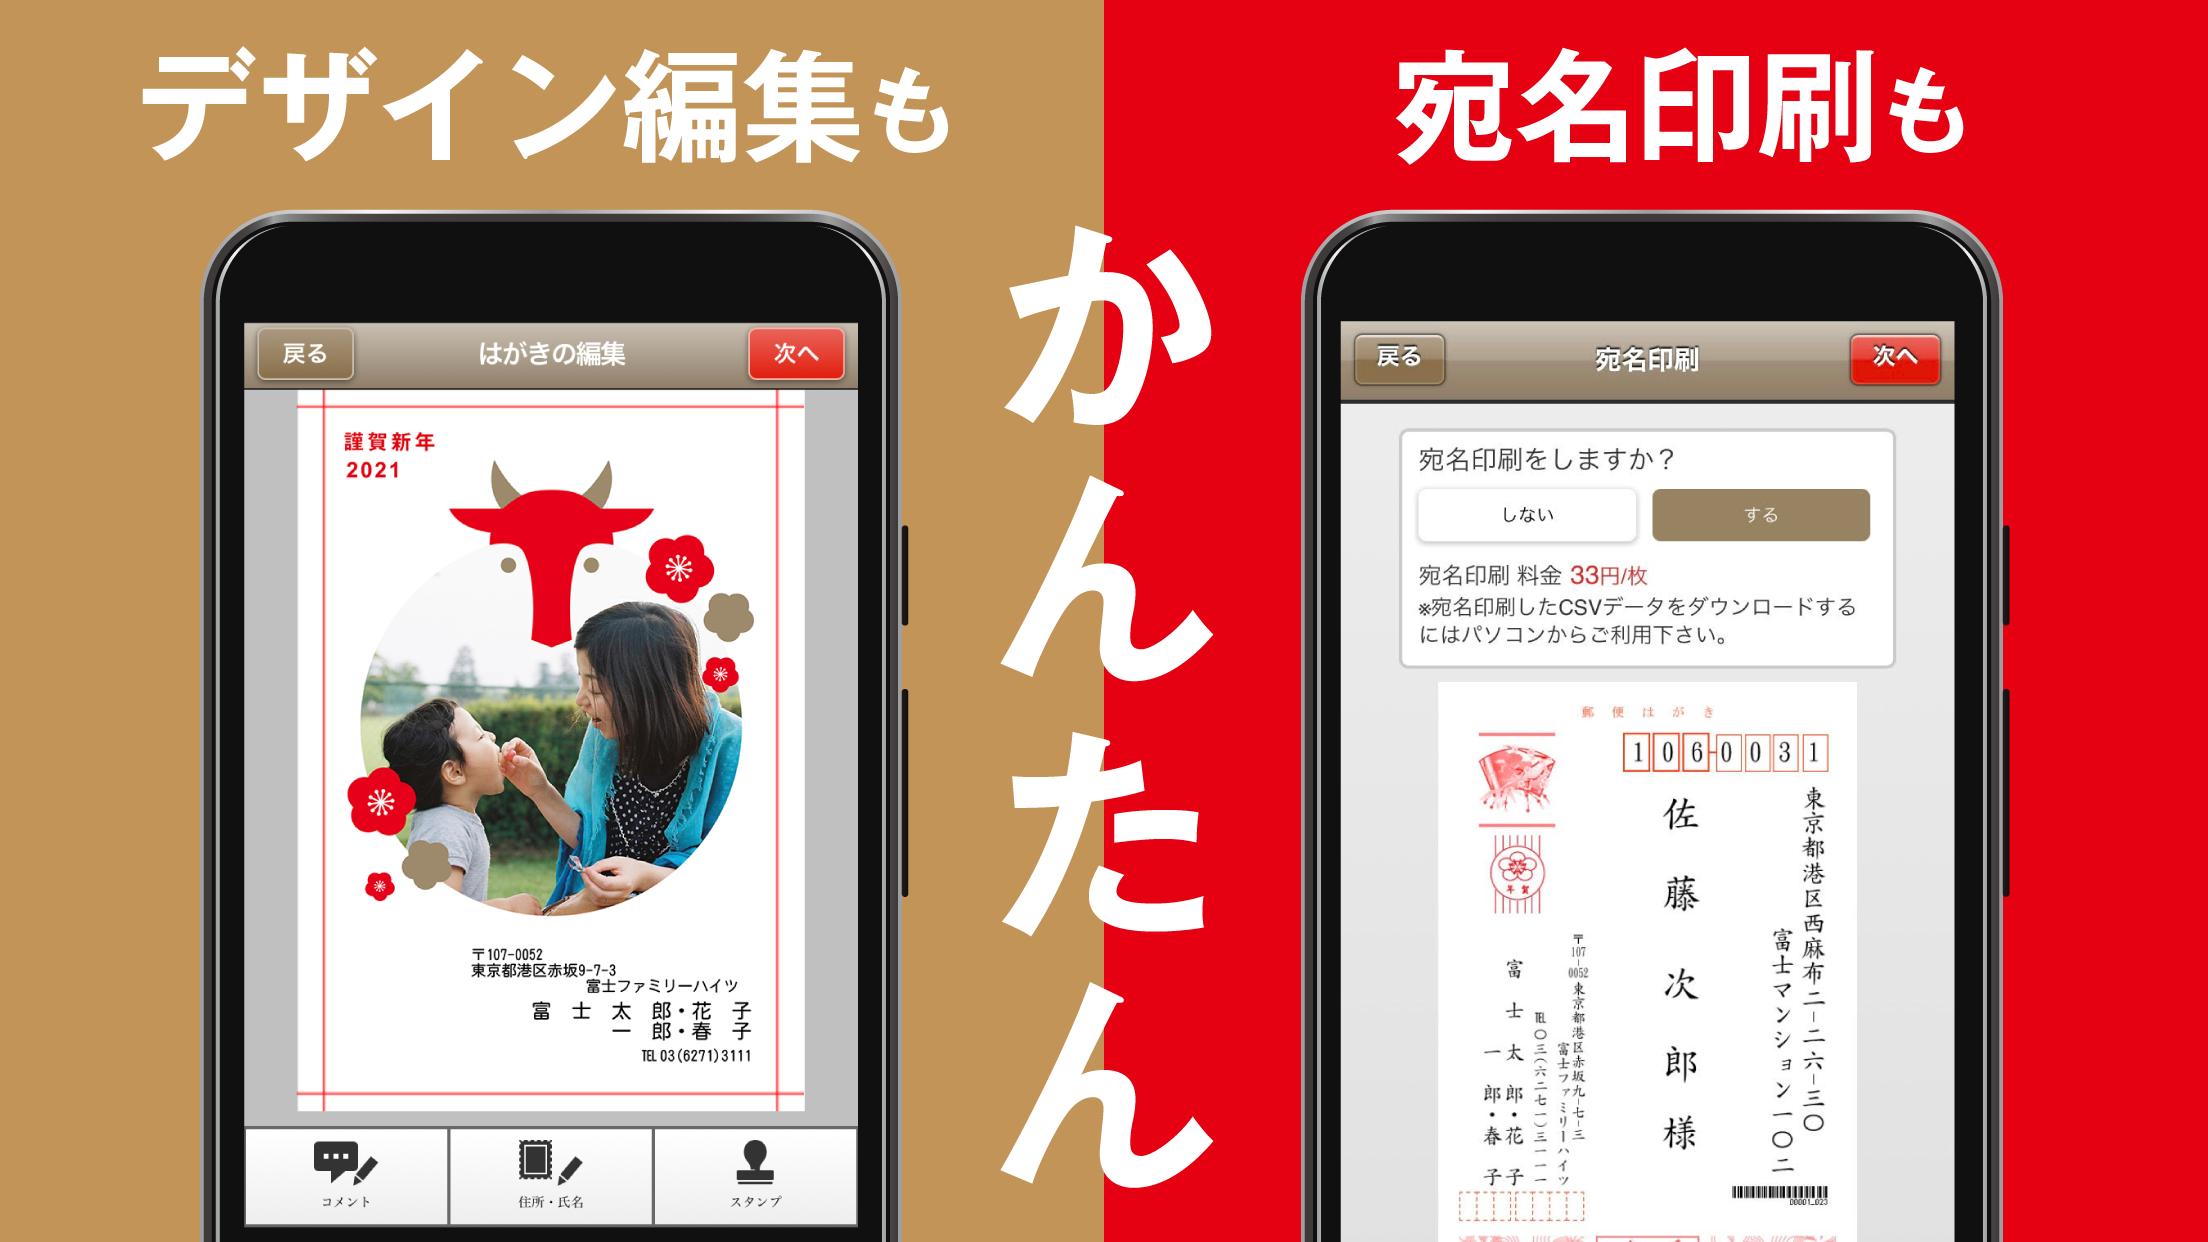 ディズニーキャラクター年賀状21 フジカラー年賀状アプリ For Android Apk Download